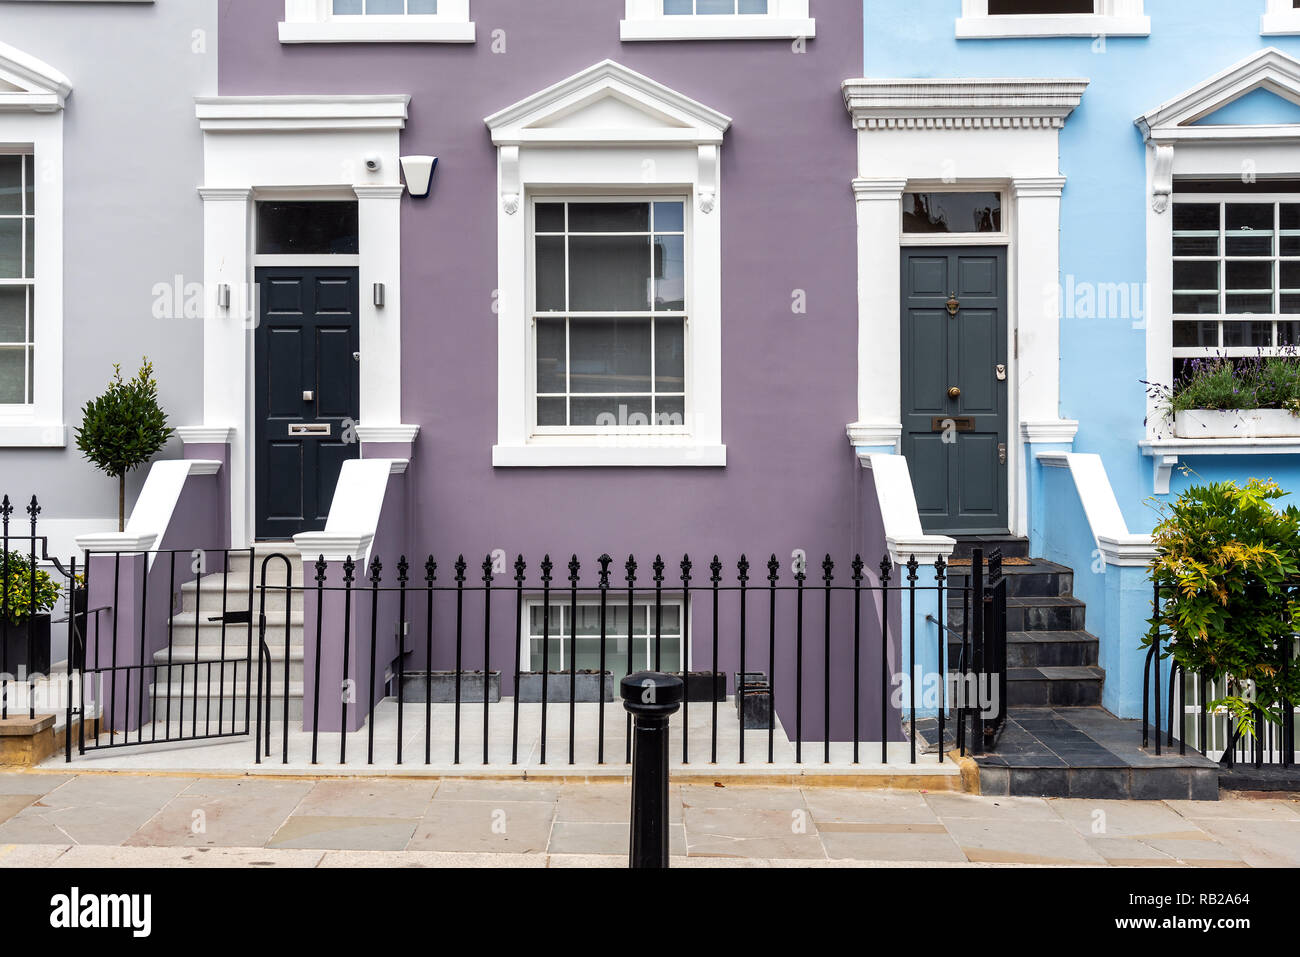 Les entrées de certaines maisons typiquement anglais vu dans Notting Hill, Londres Banque D'Images